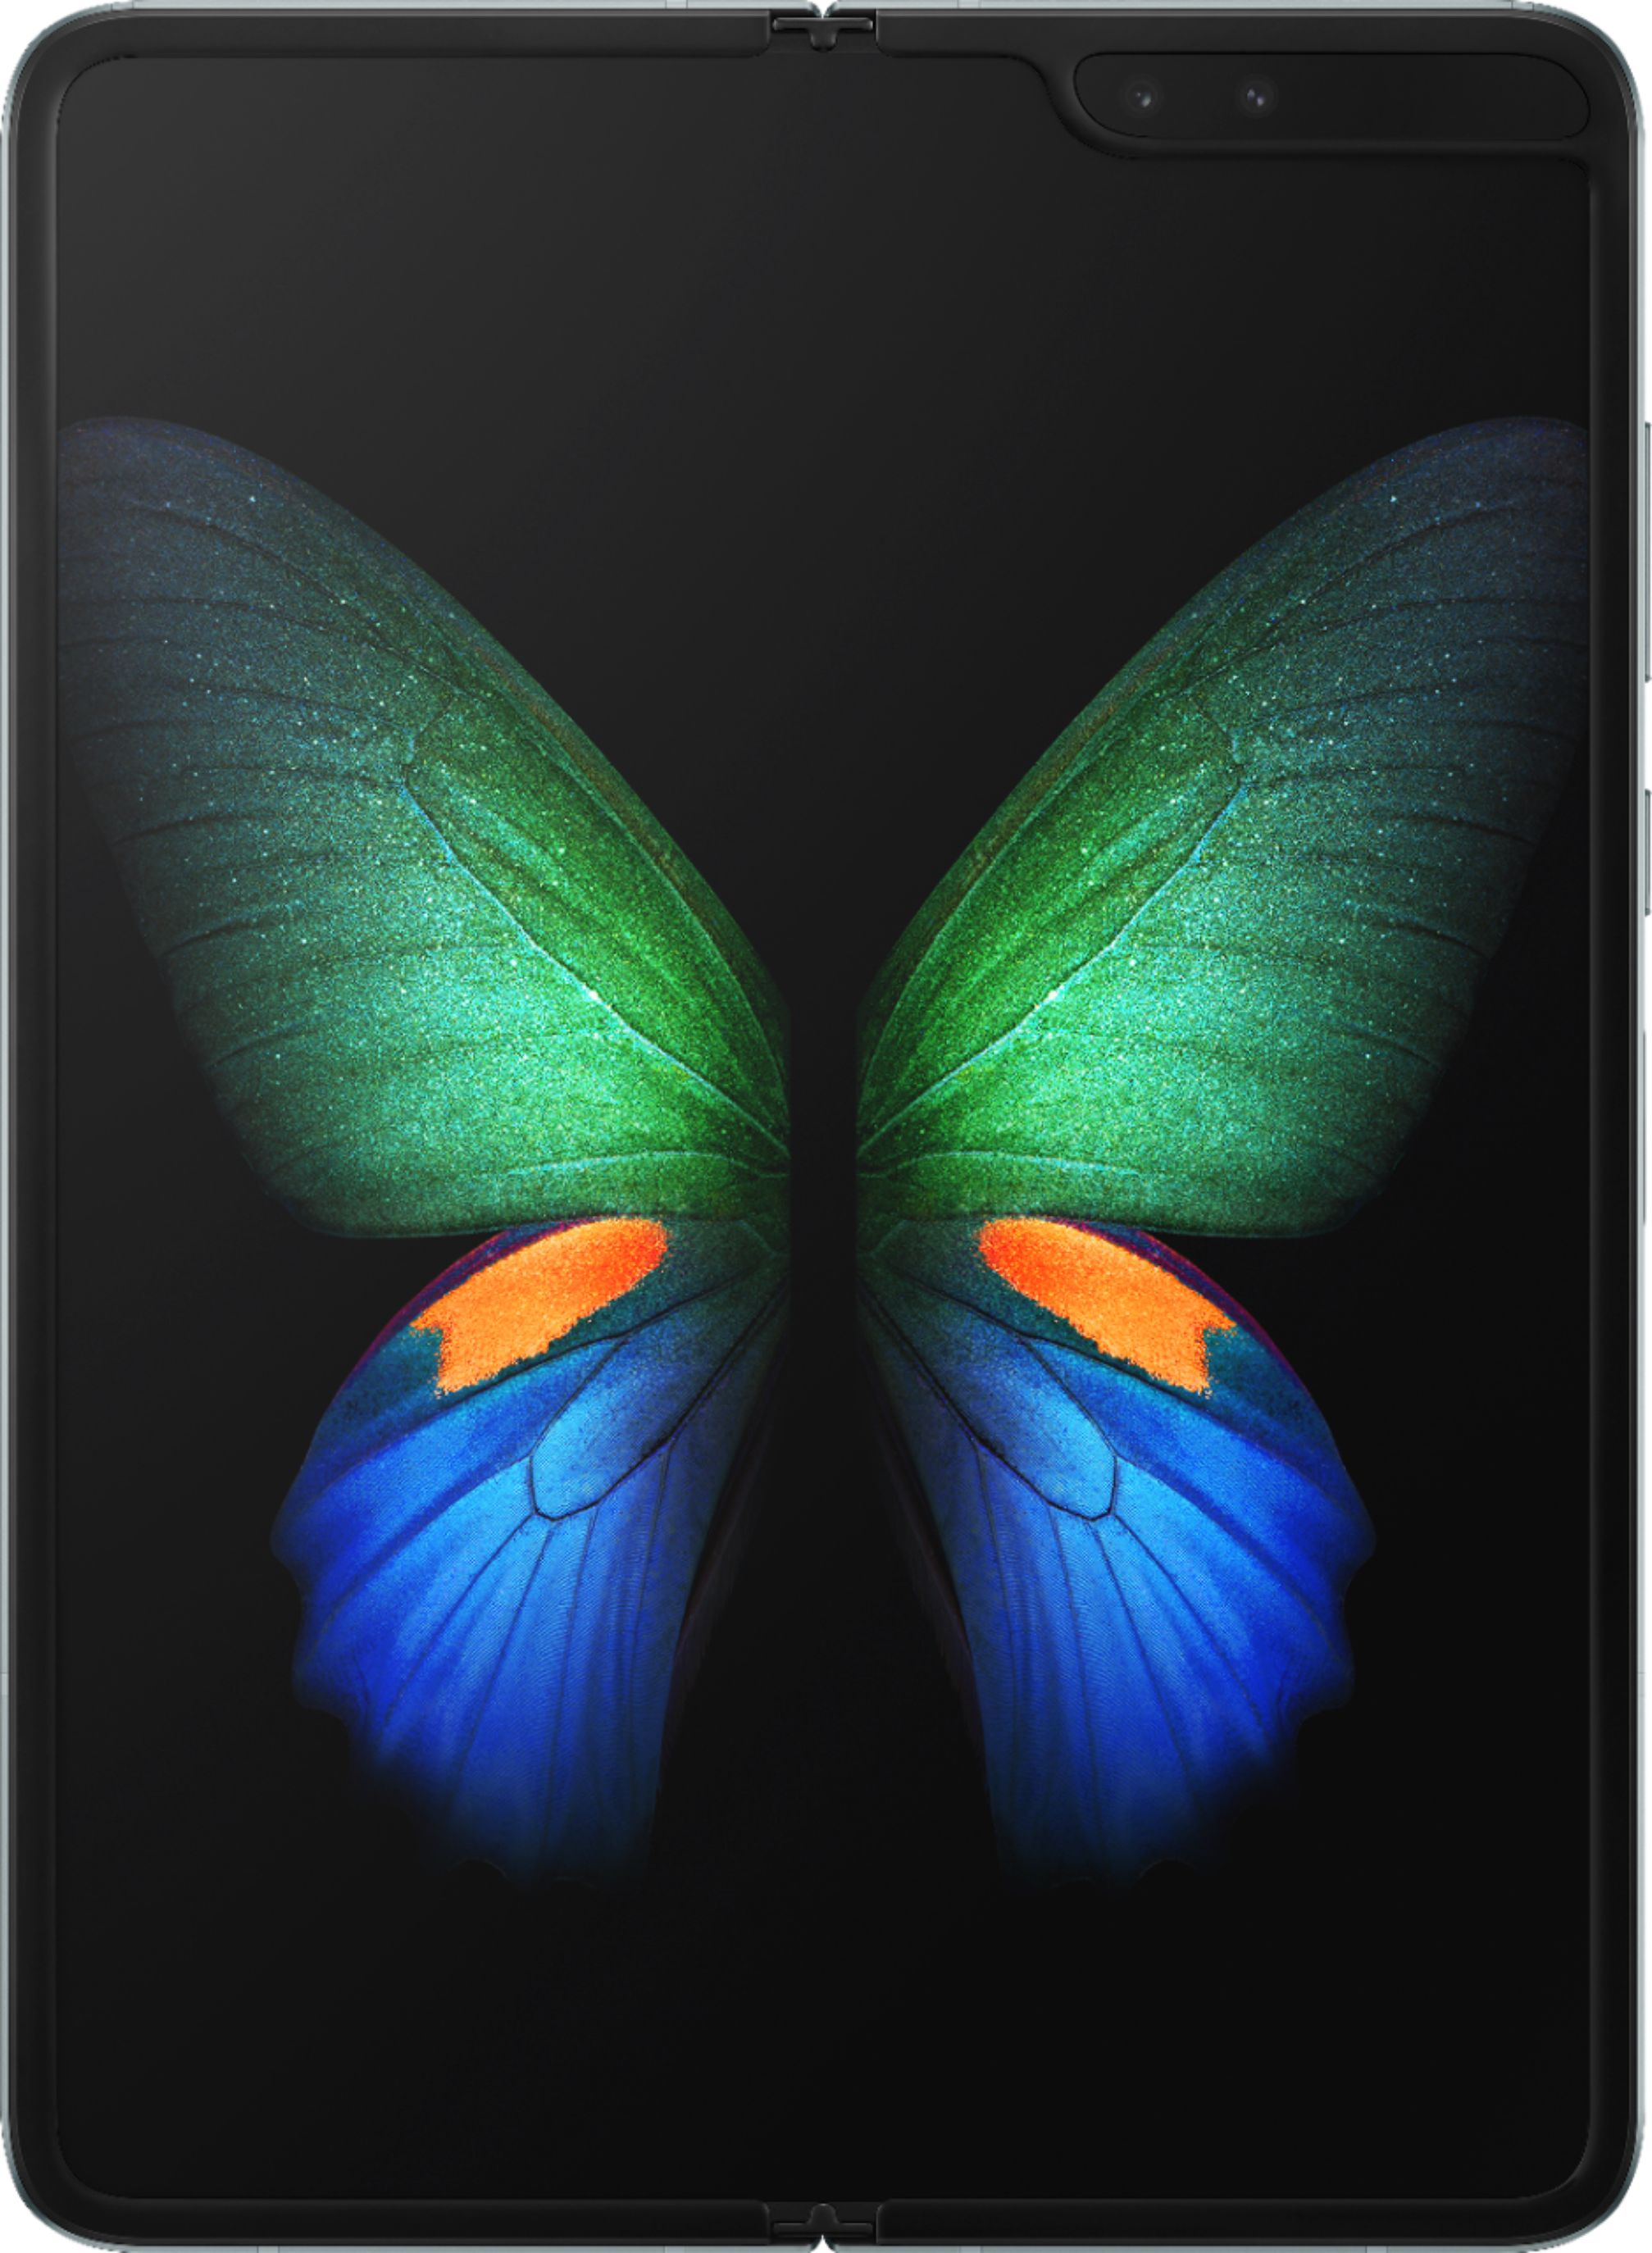 スマートフォン/携帯電話 携帯電話本体 Best Buy: Samsung Galaxy Fold with 512GB Memory Cell Phone (Unlocked) Space  Silver SM-F900UZSDXAA